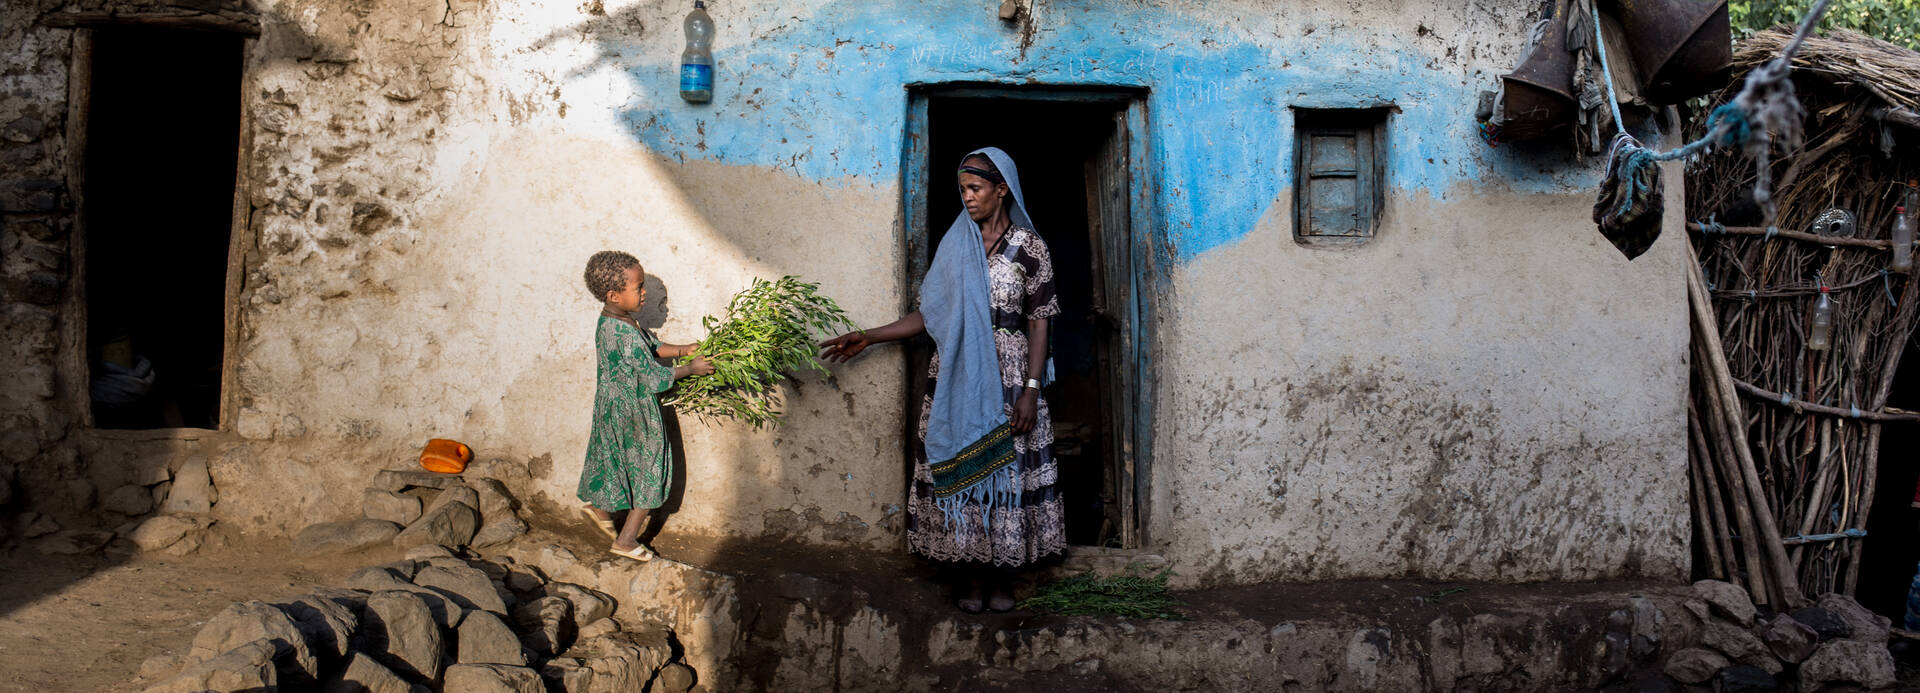 Mutter und Kind vor ihrem Haus in Äthiopien